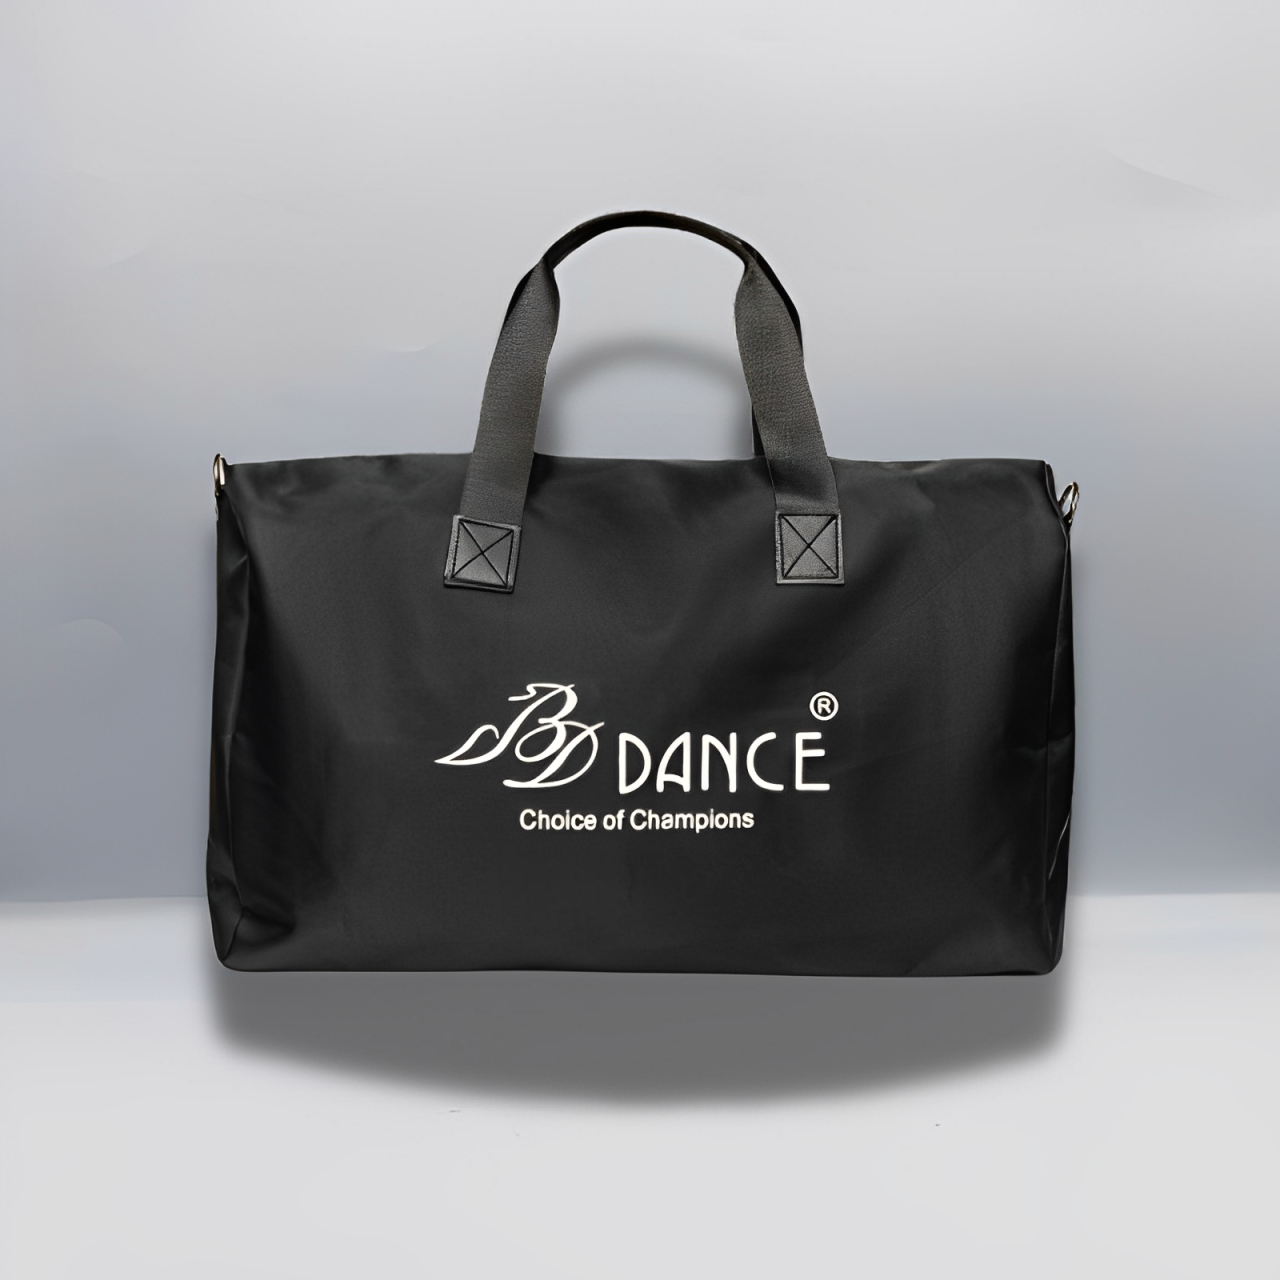 Bolsa de viaje y práctica - BD DANCE